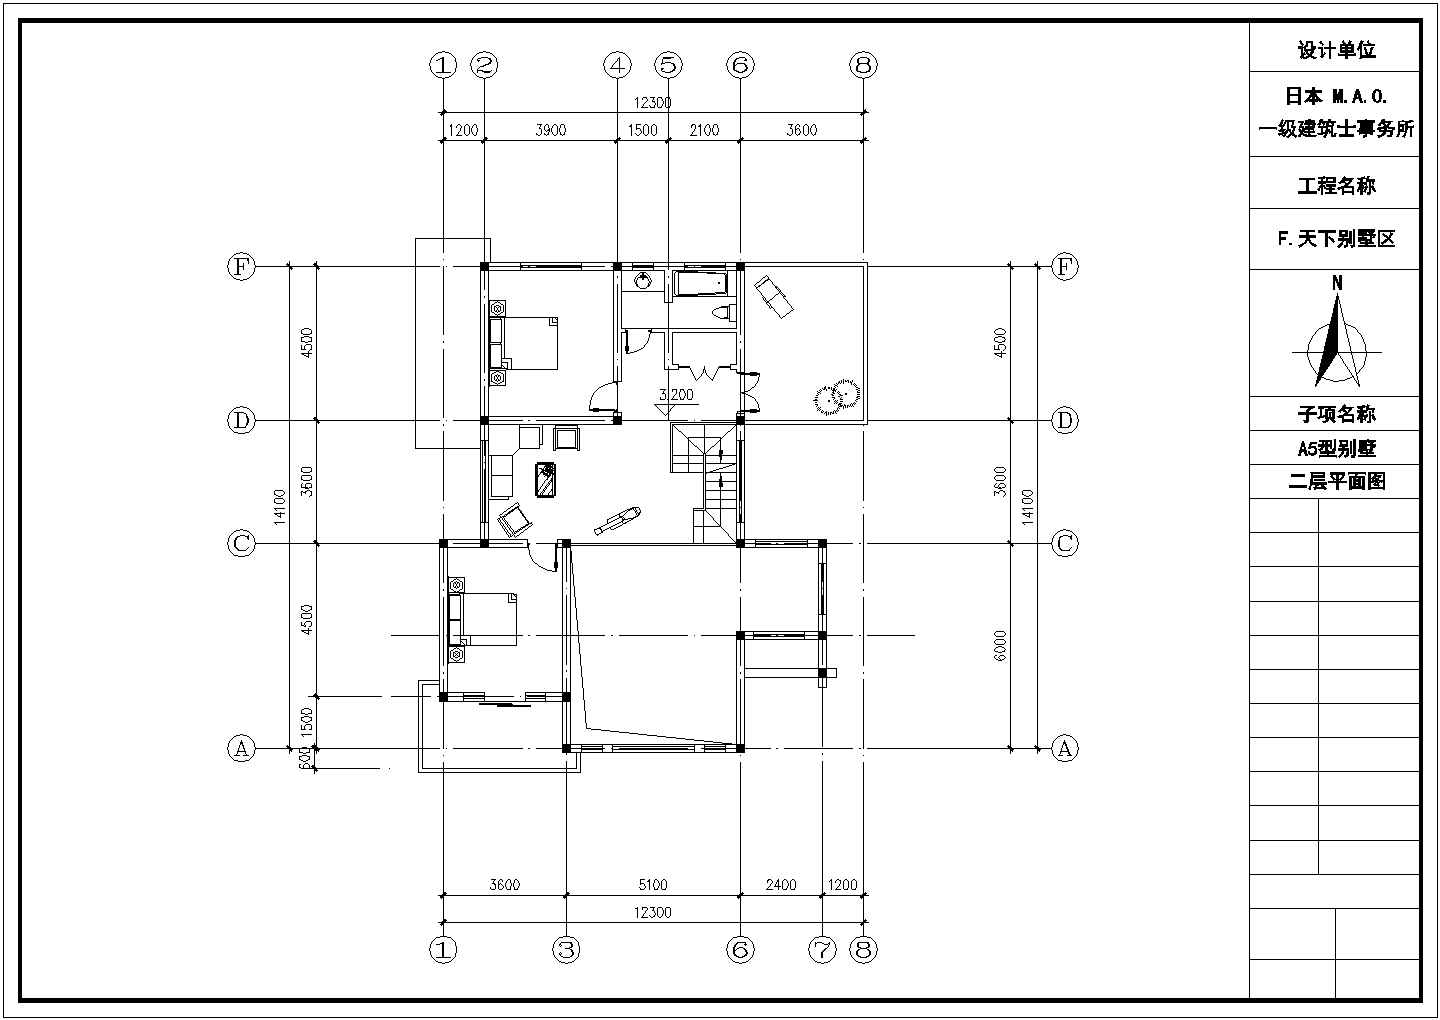 嘉兴市楠馨花园小区3层砖混结构单体别墅全套建筑设计CAD图纸